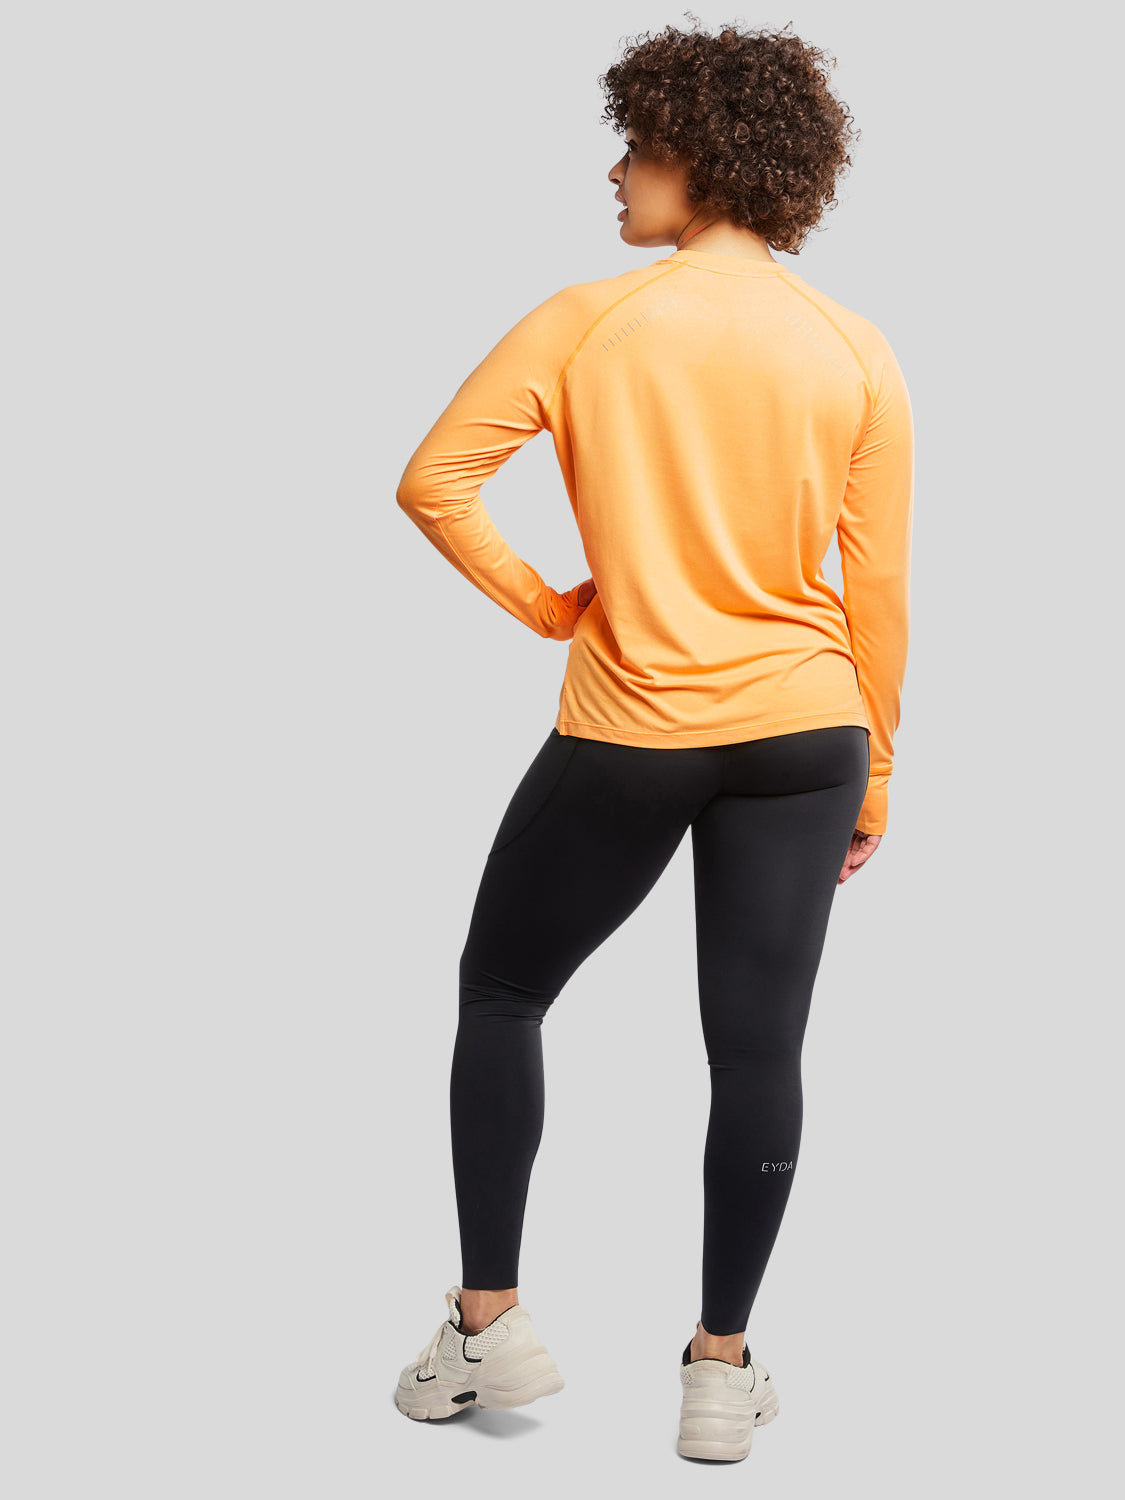 kvinde bagfra med træningstrøje i farven apricot og sorte tights